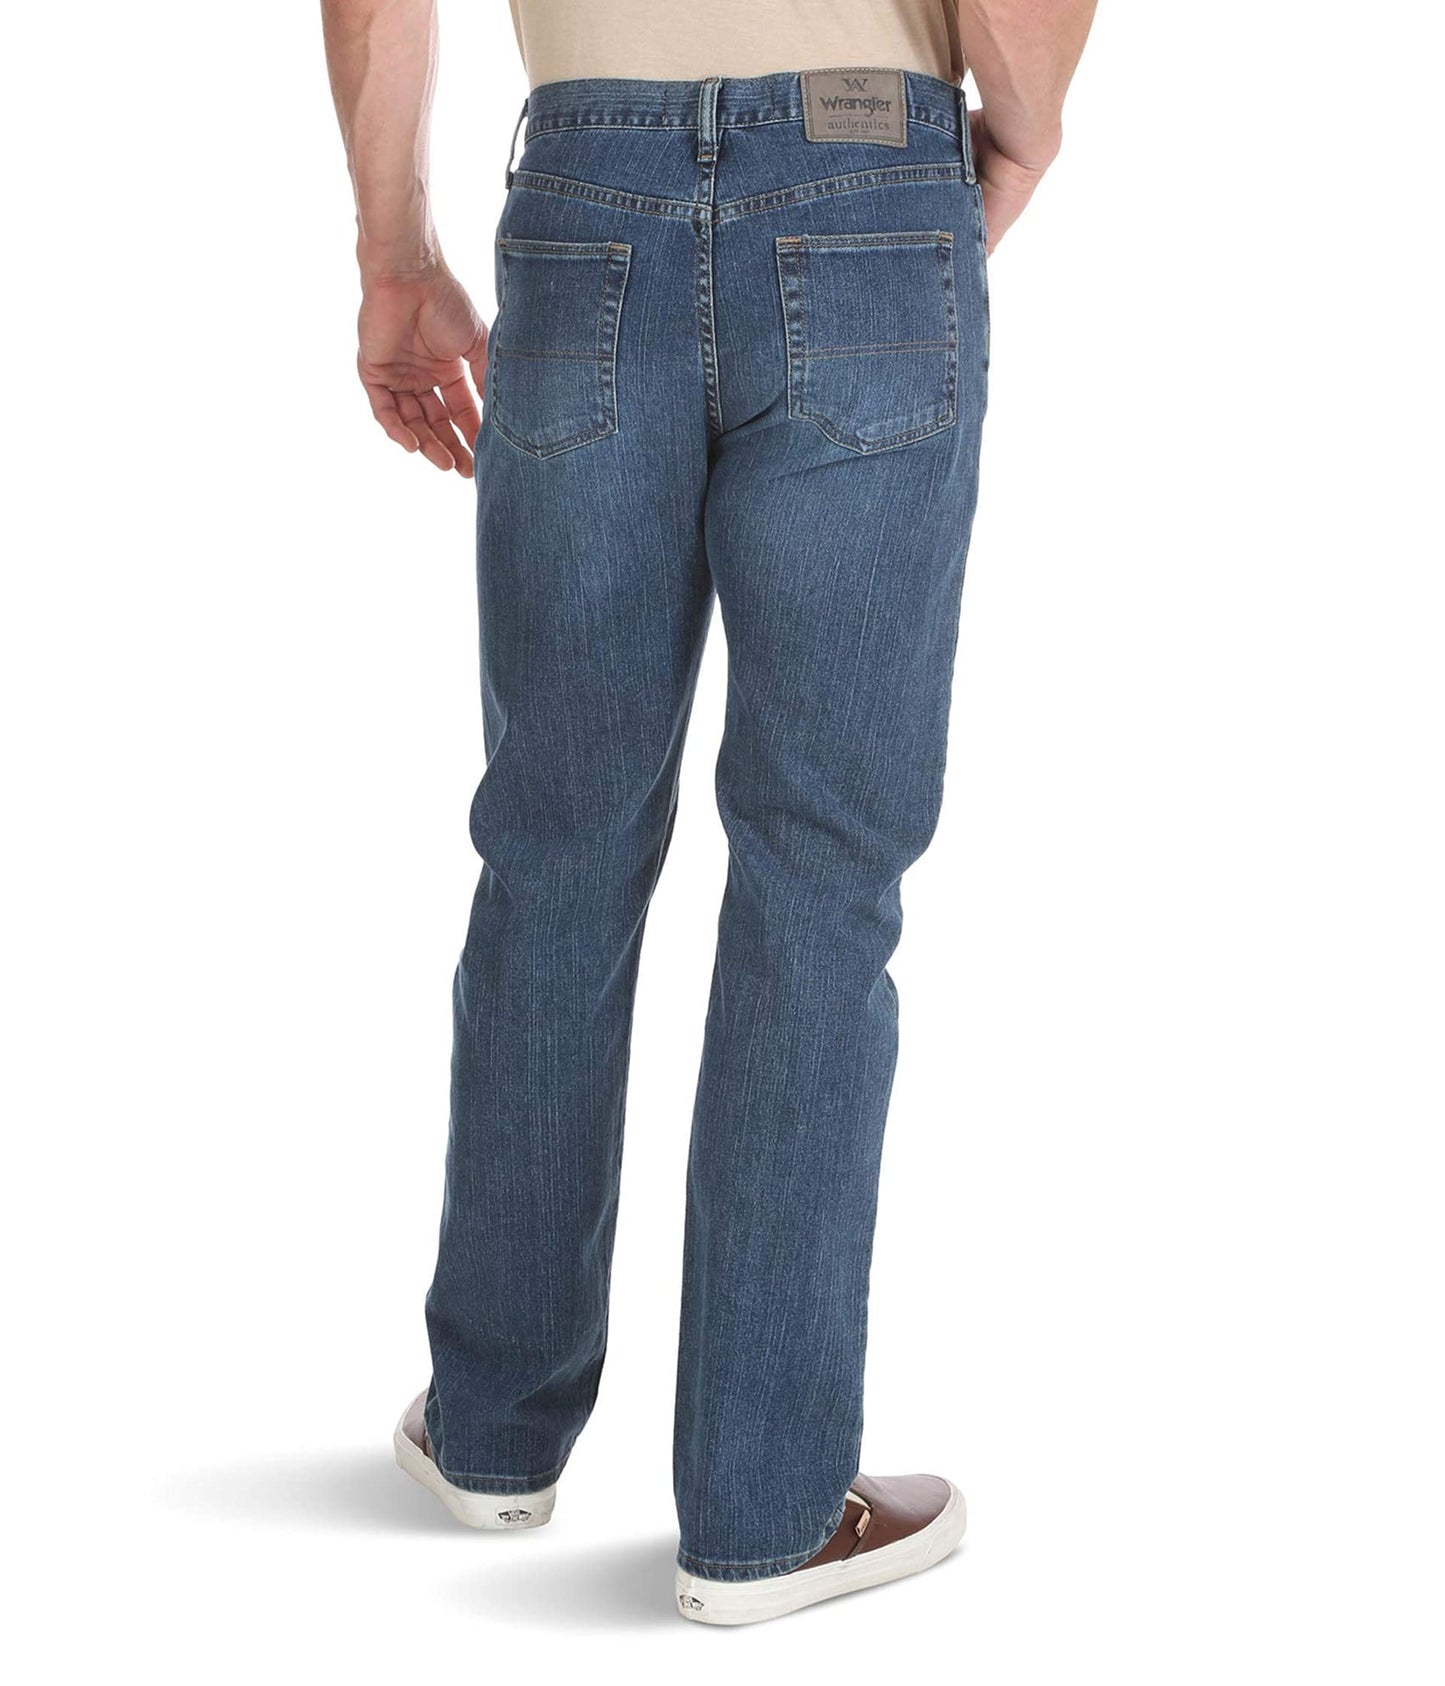 Wrangler Authentics Men's Classic 5-Pocket Regular Fit Jean, Blue Ocean Flex, 36W x 30L